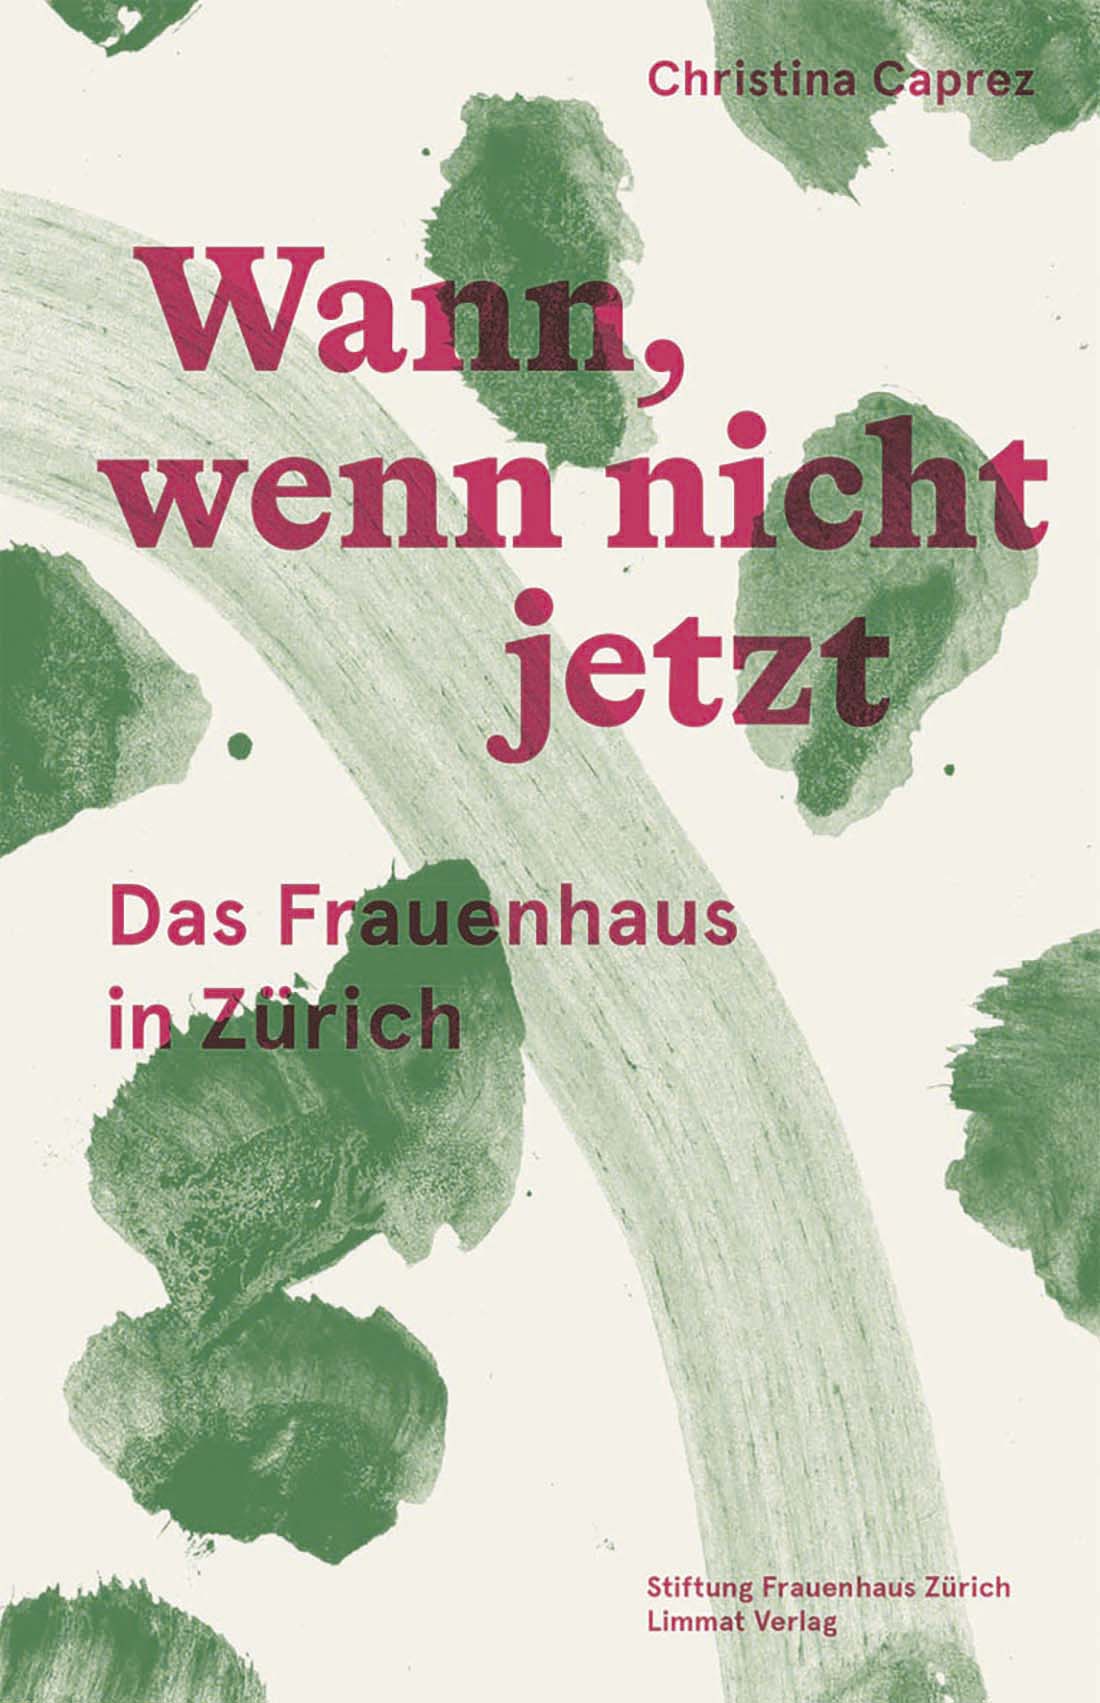 “Wann, wenn nicht jetzt – das Frauenhaus in Zürich” by Christina Caprez